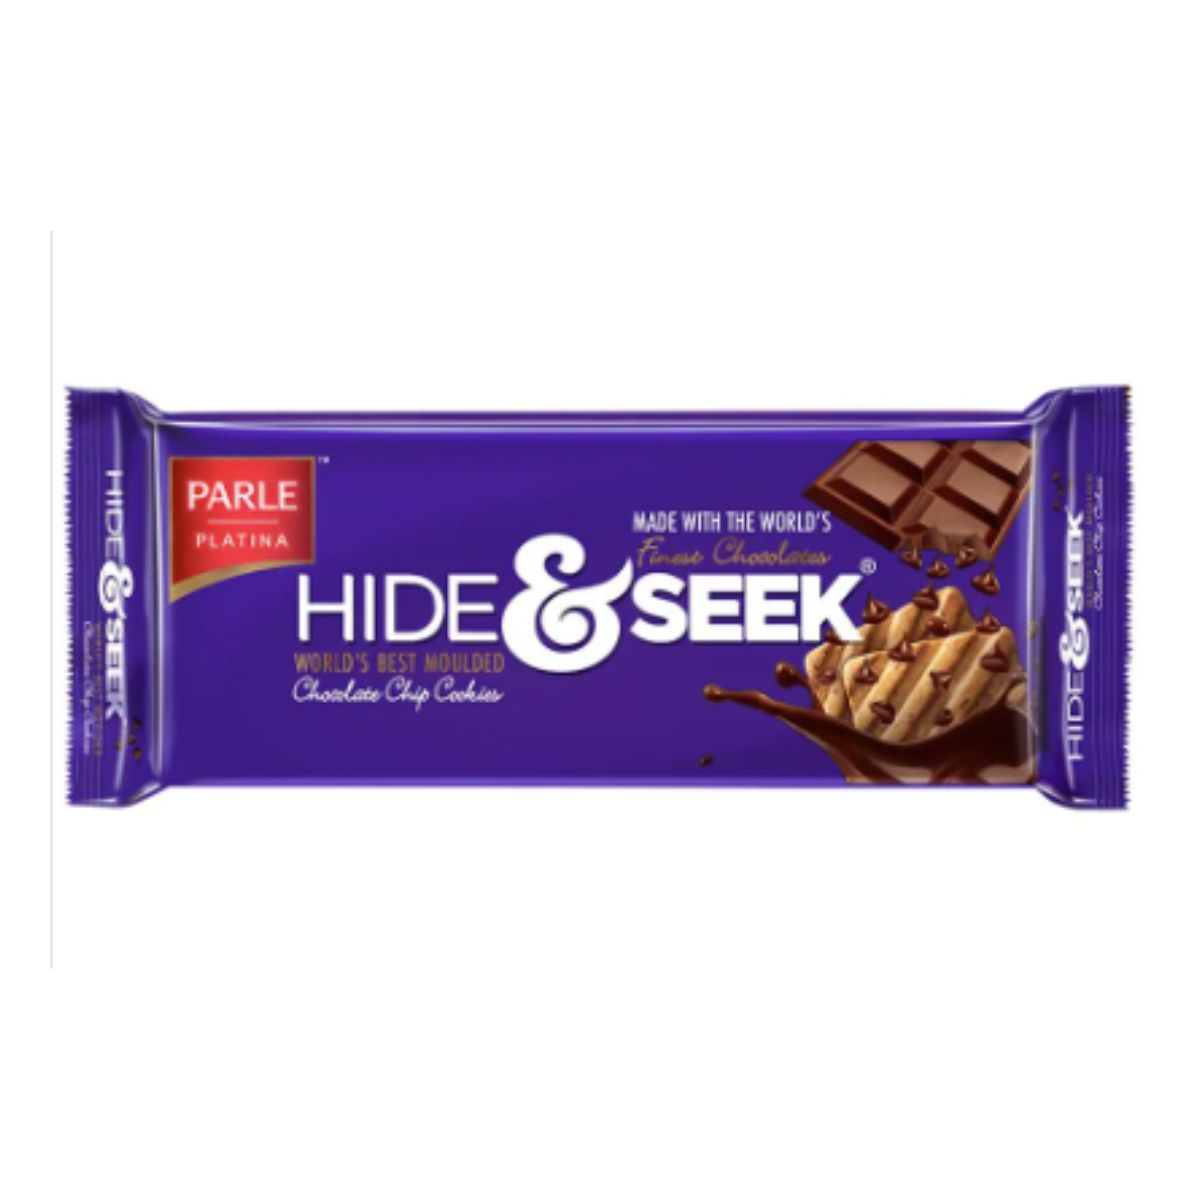 Parle Platina Hide & Seek - Chocolate Chip Cookies - 120g